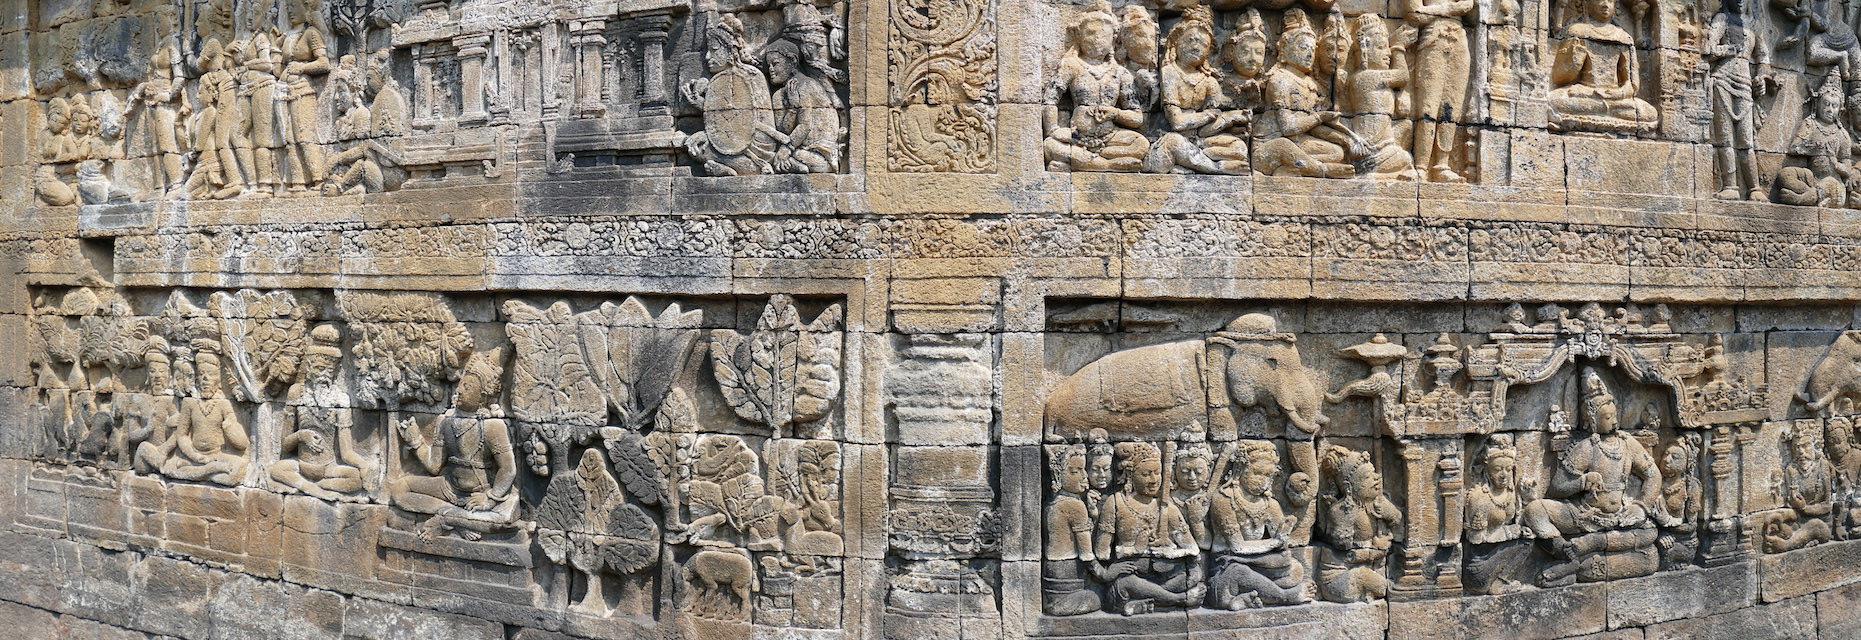 Reliefs beschreiben zum Leben Buddhas